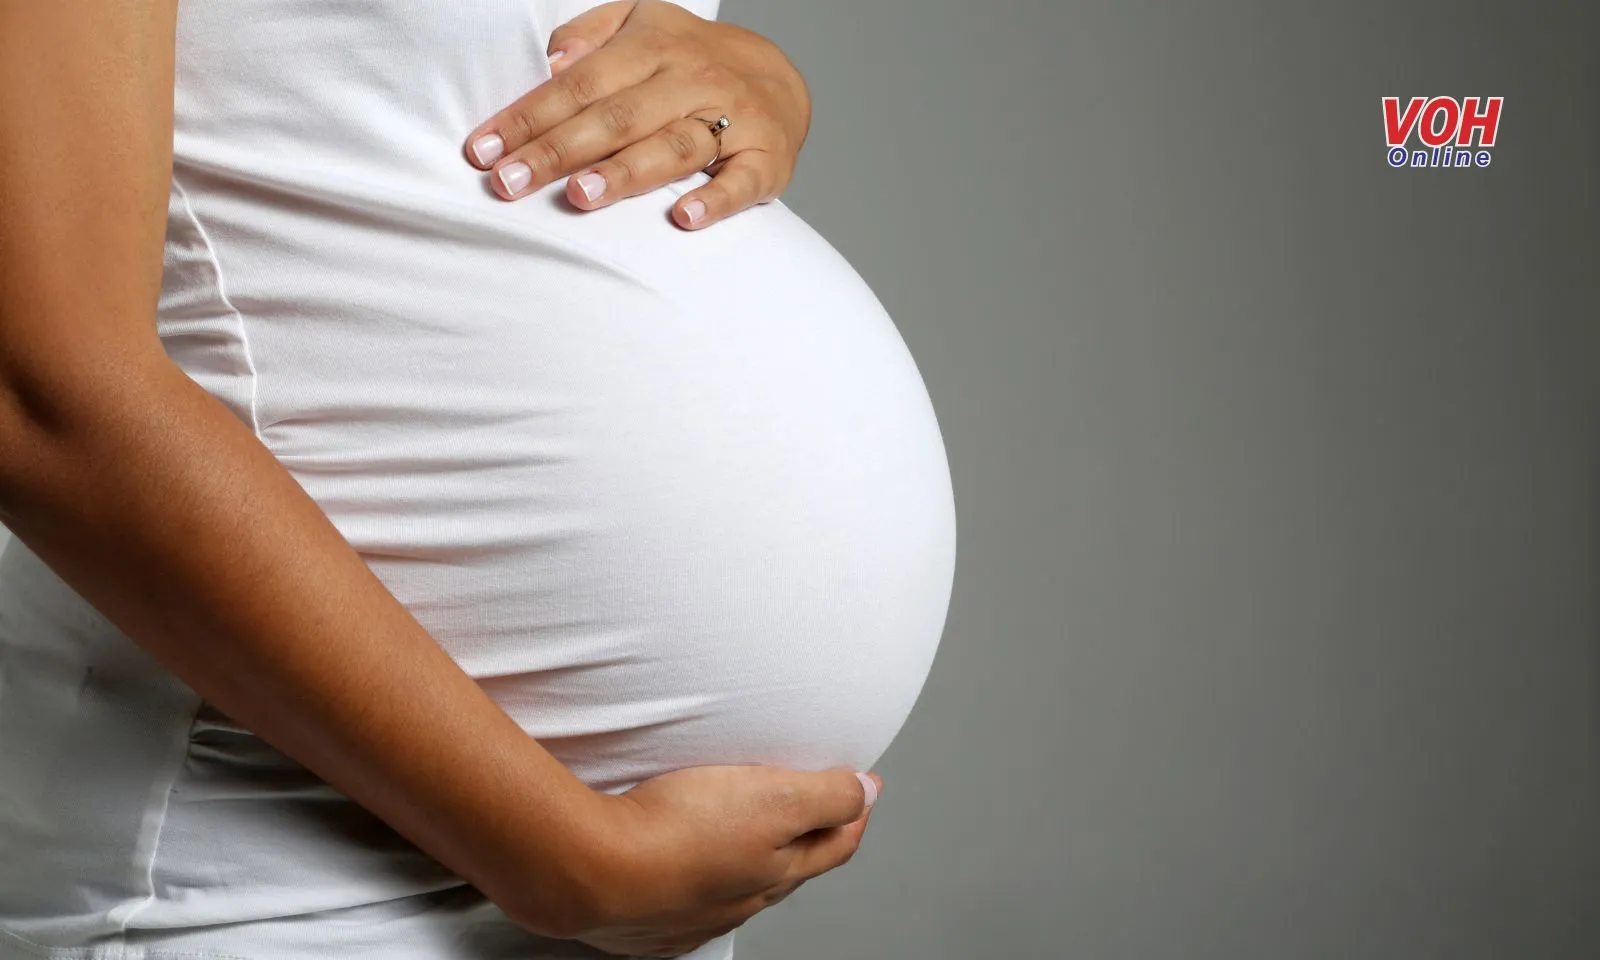 Phụ nữ mang thai tiêm vaccine viêm não mô cầu được không?